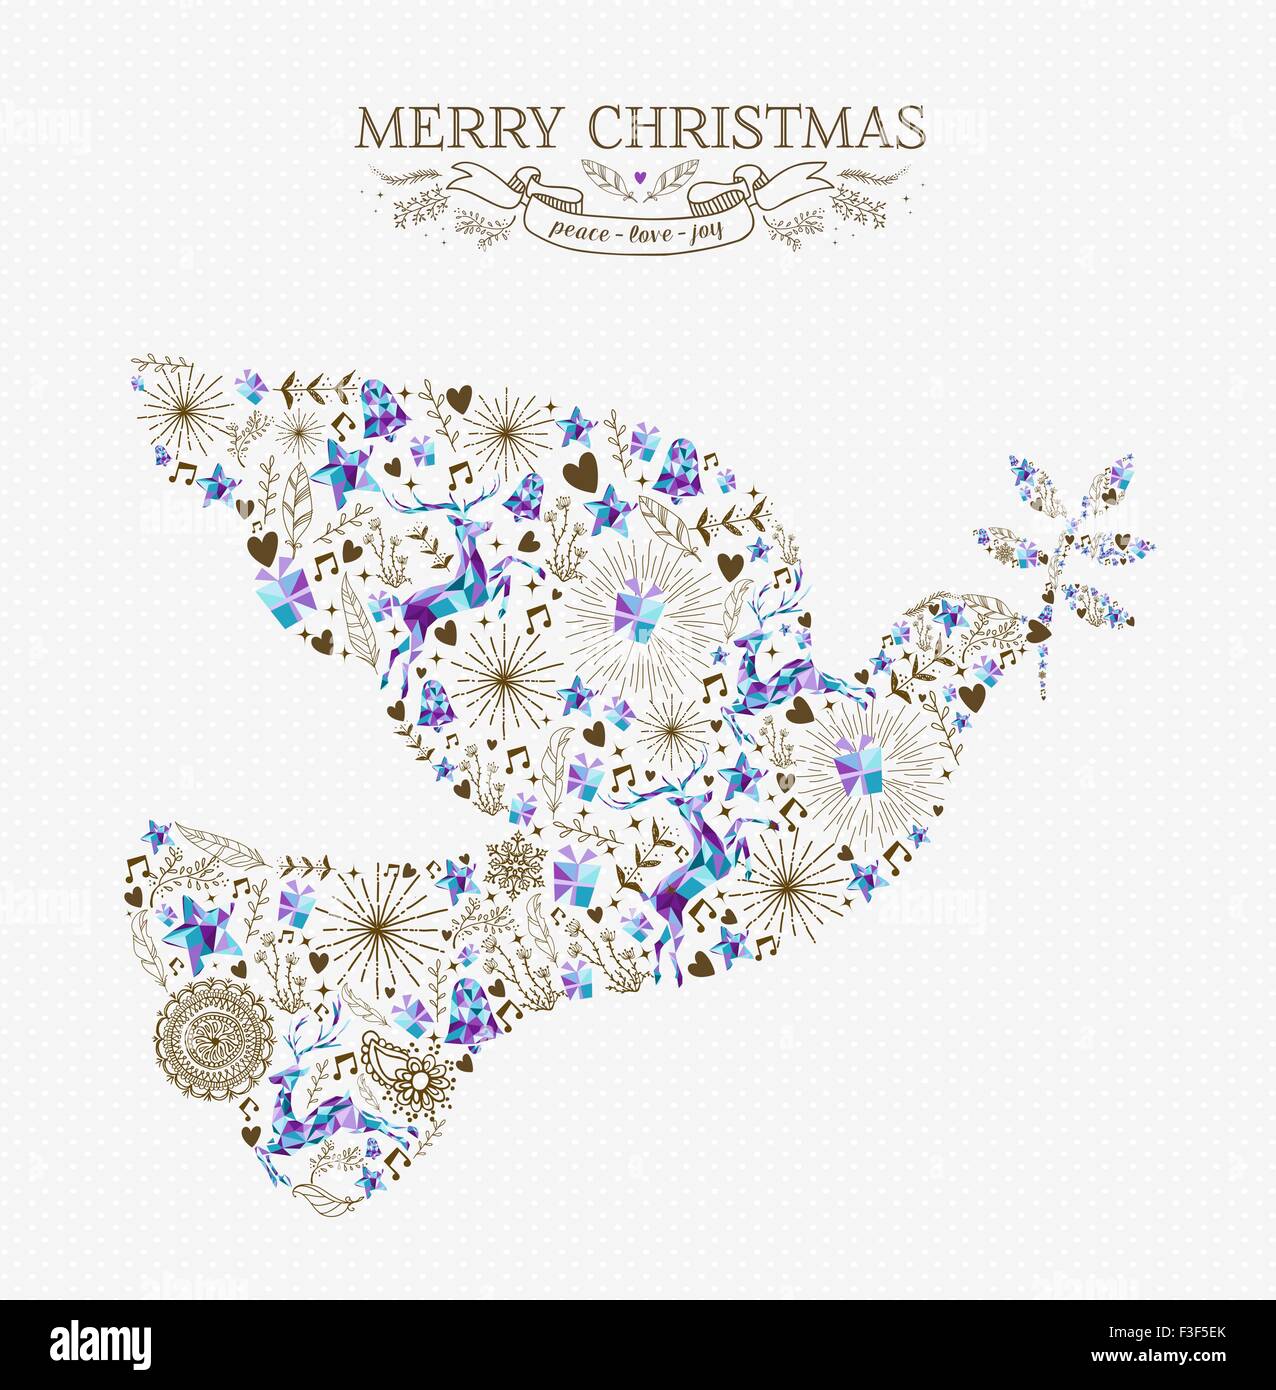 Buon Natale di pace in forma di colomba composizione con le renne e vintage elementi di vacanza. Ideale per natale biglietto di auguri o di inviti Illustrazione Vettoriale